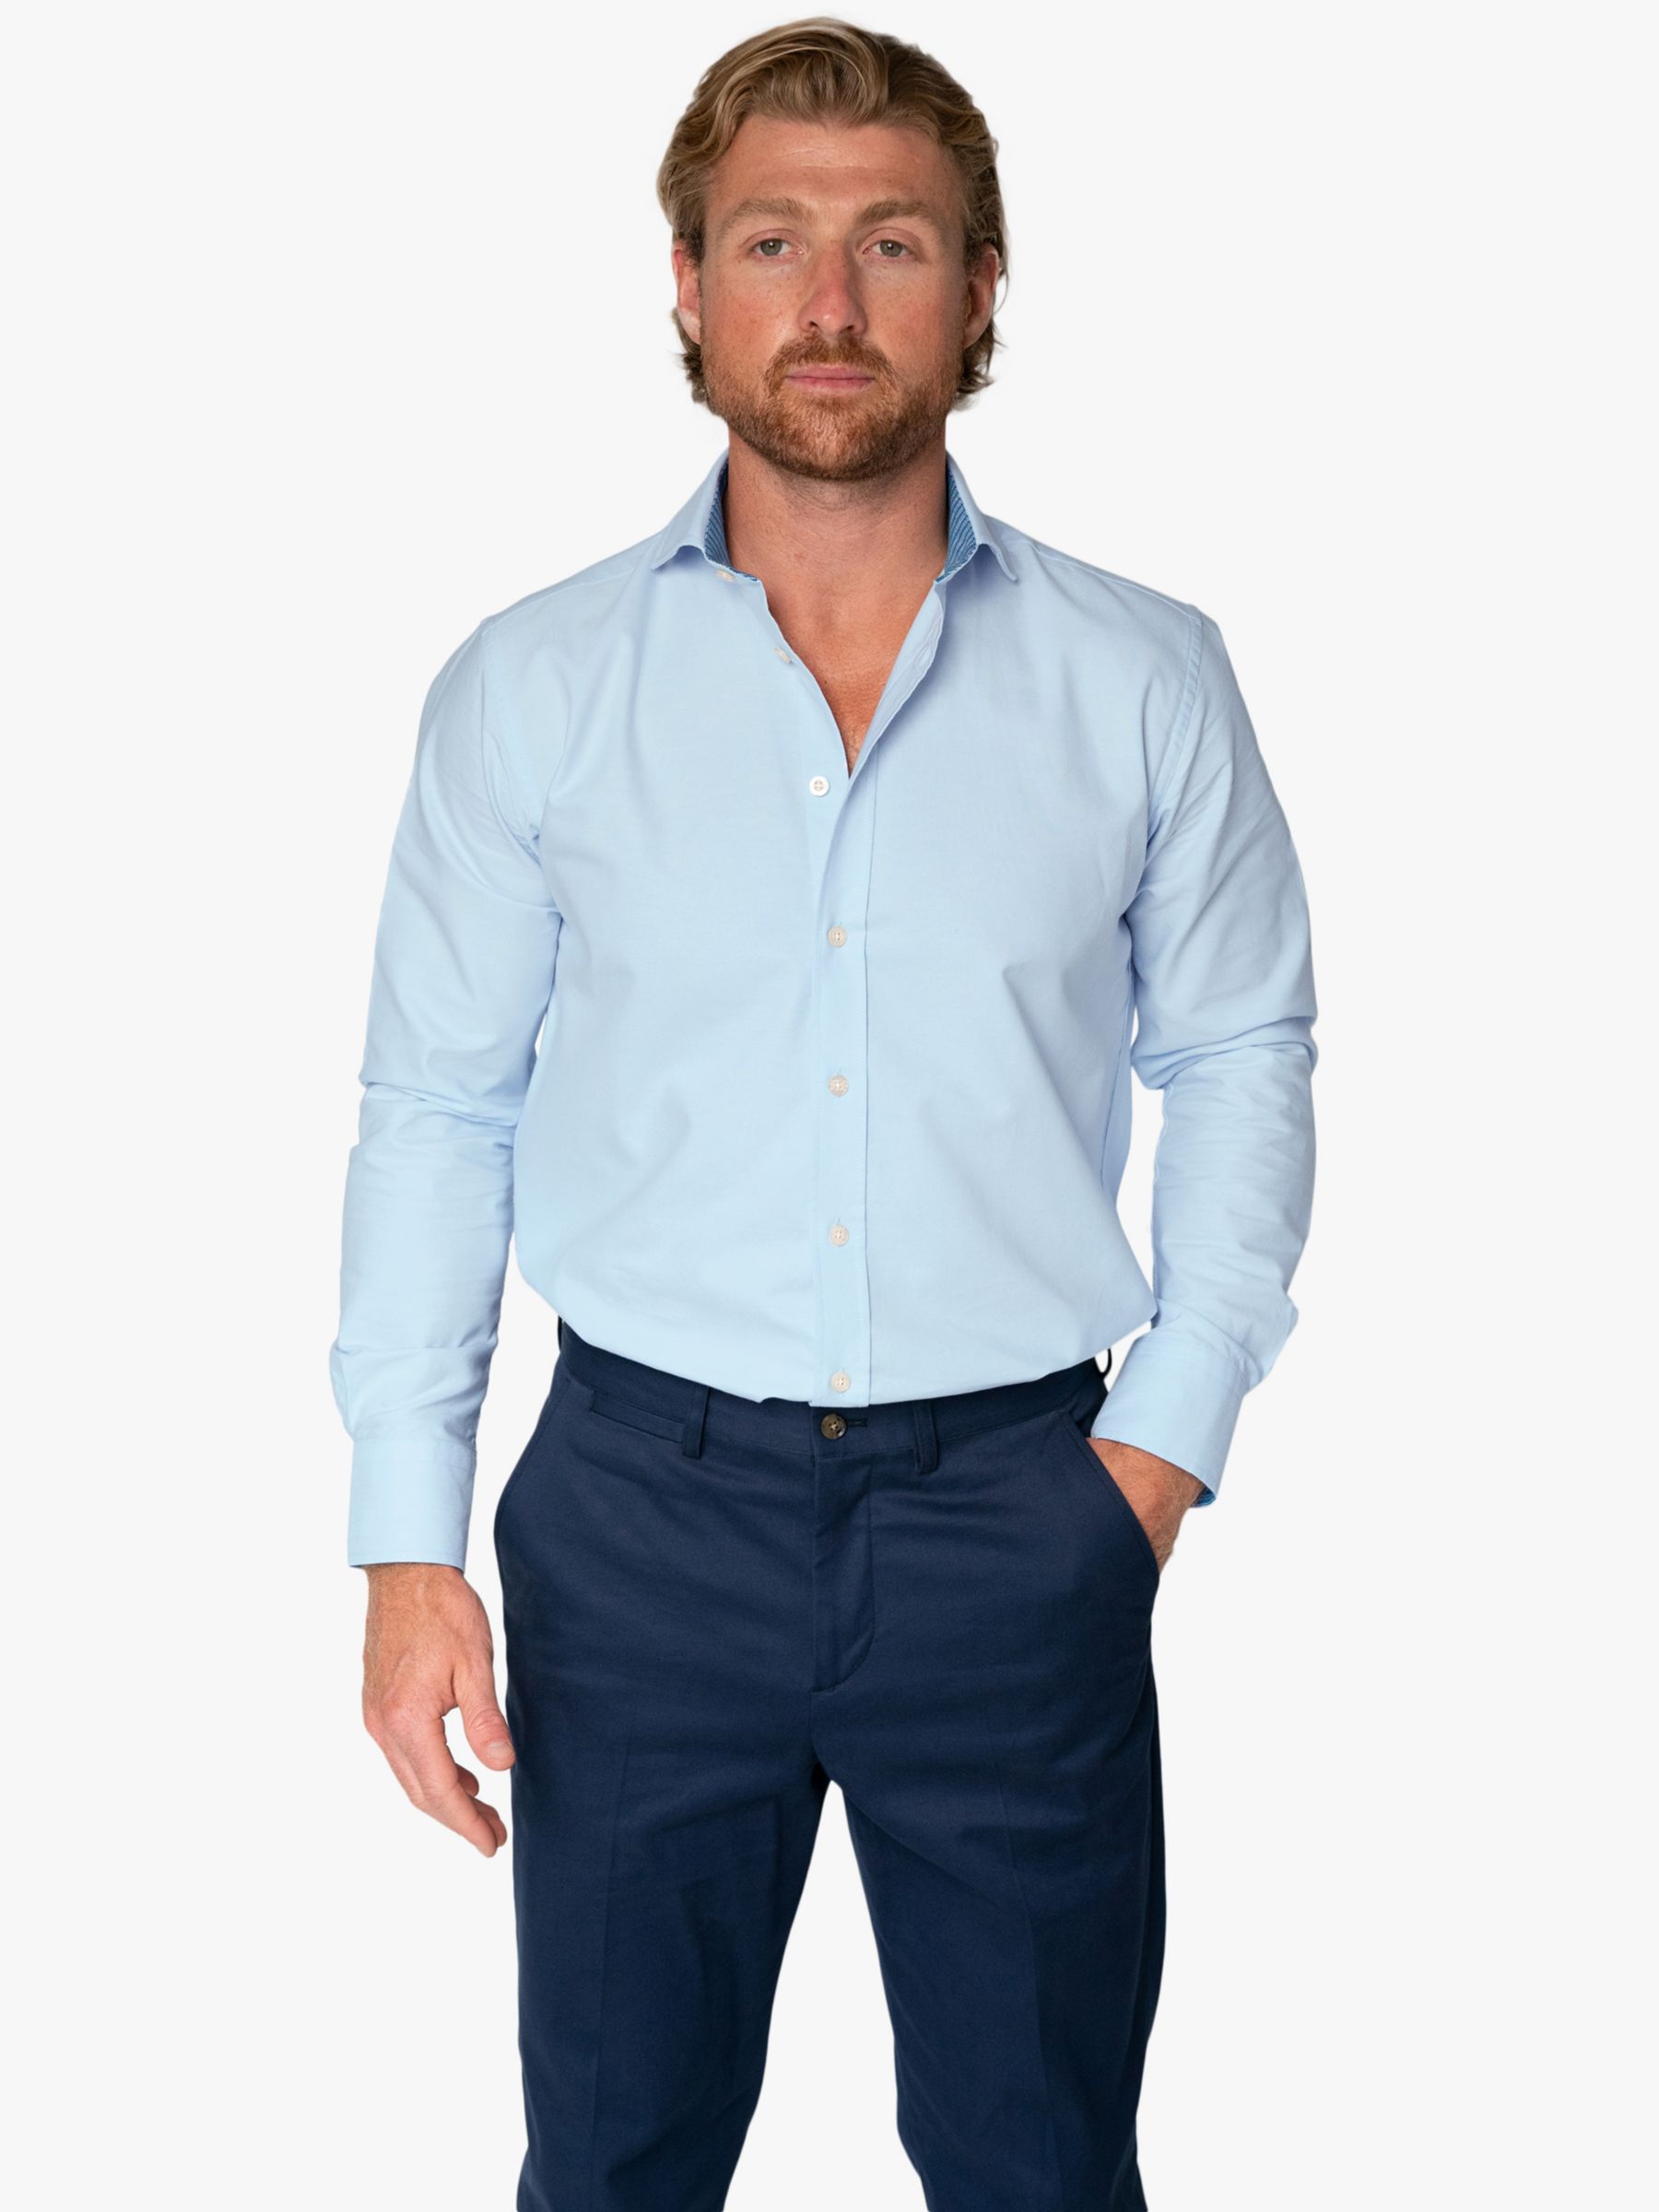 KOY Oxford Cotton Shirt, Blue Light, S